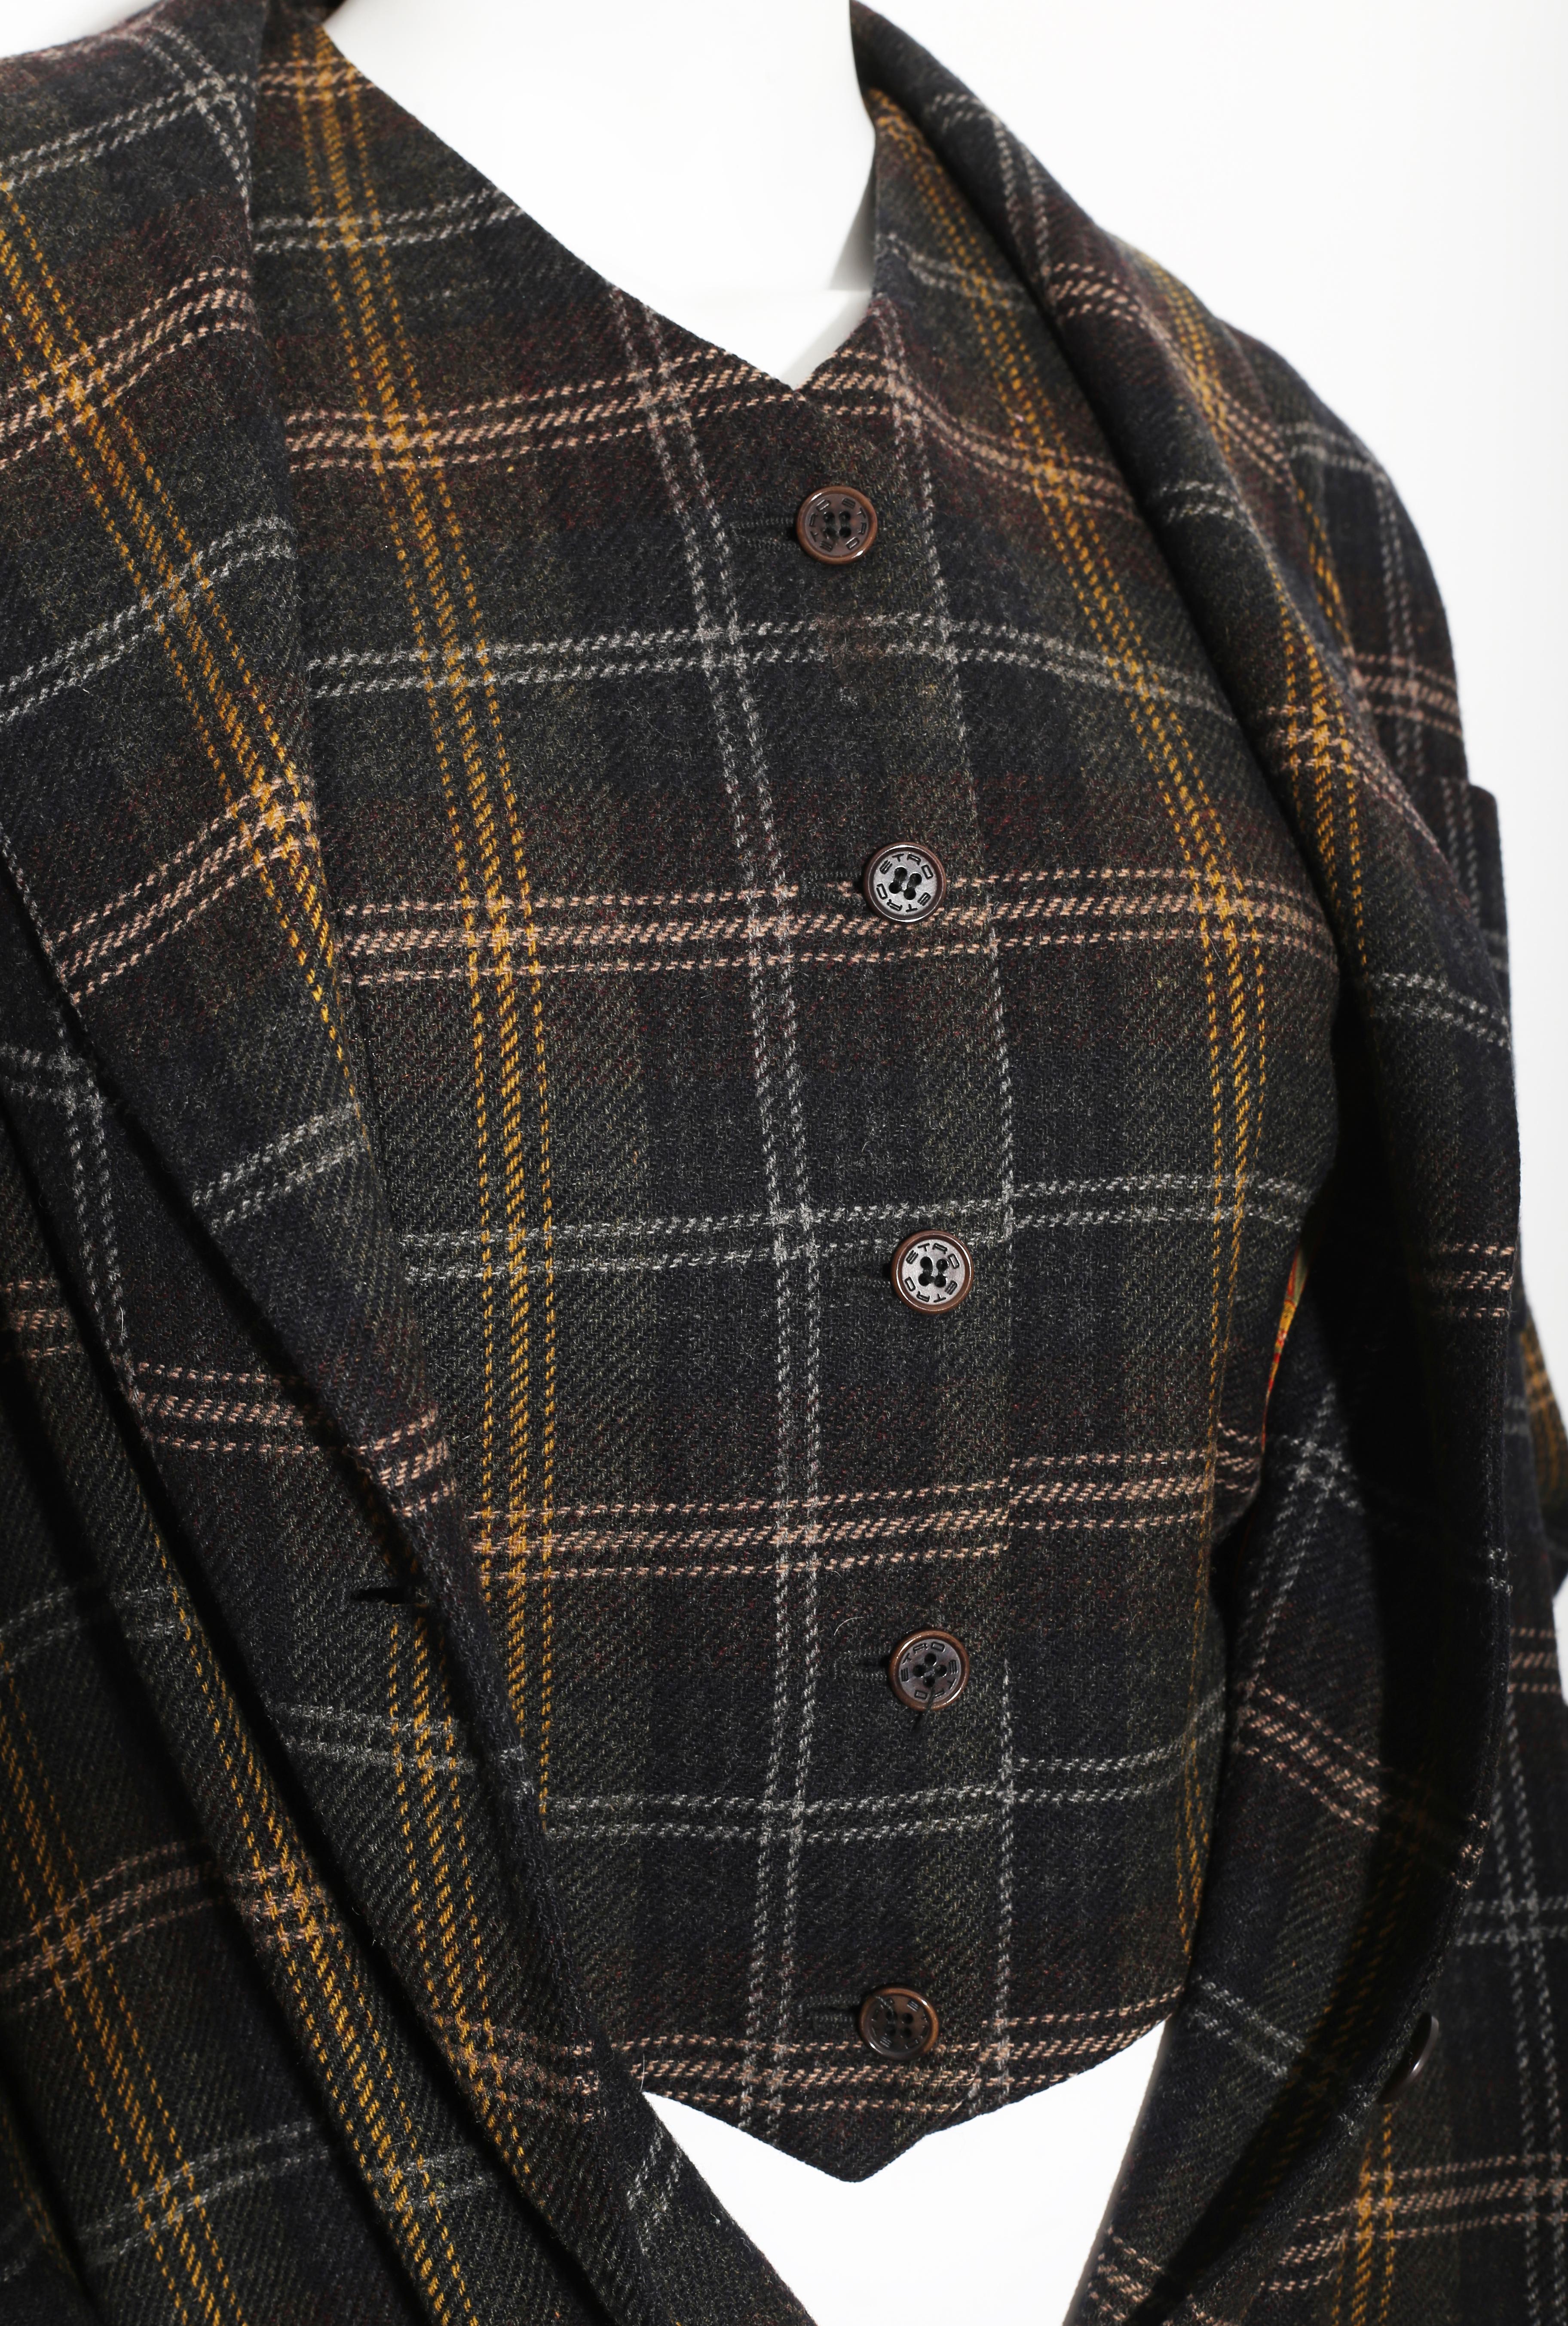 Black Etro twinset sport jacket and gilet  in freeze wool tartan design in blues